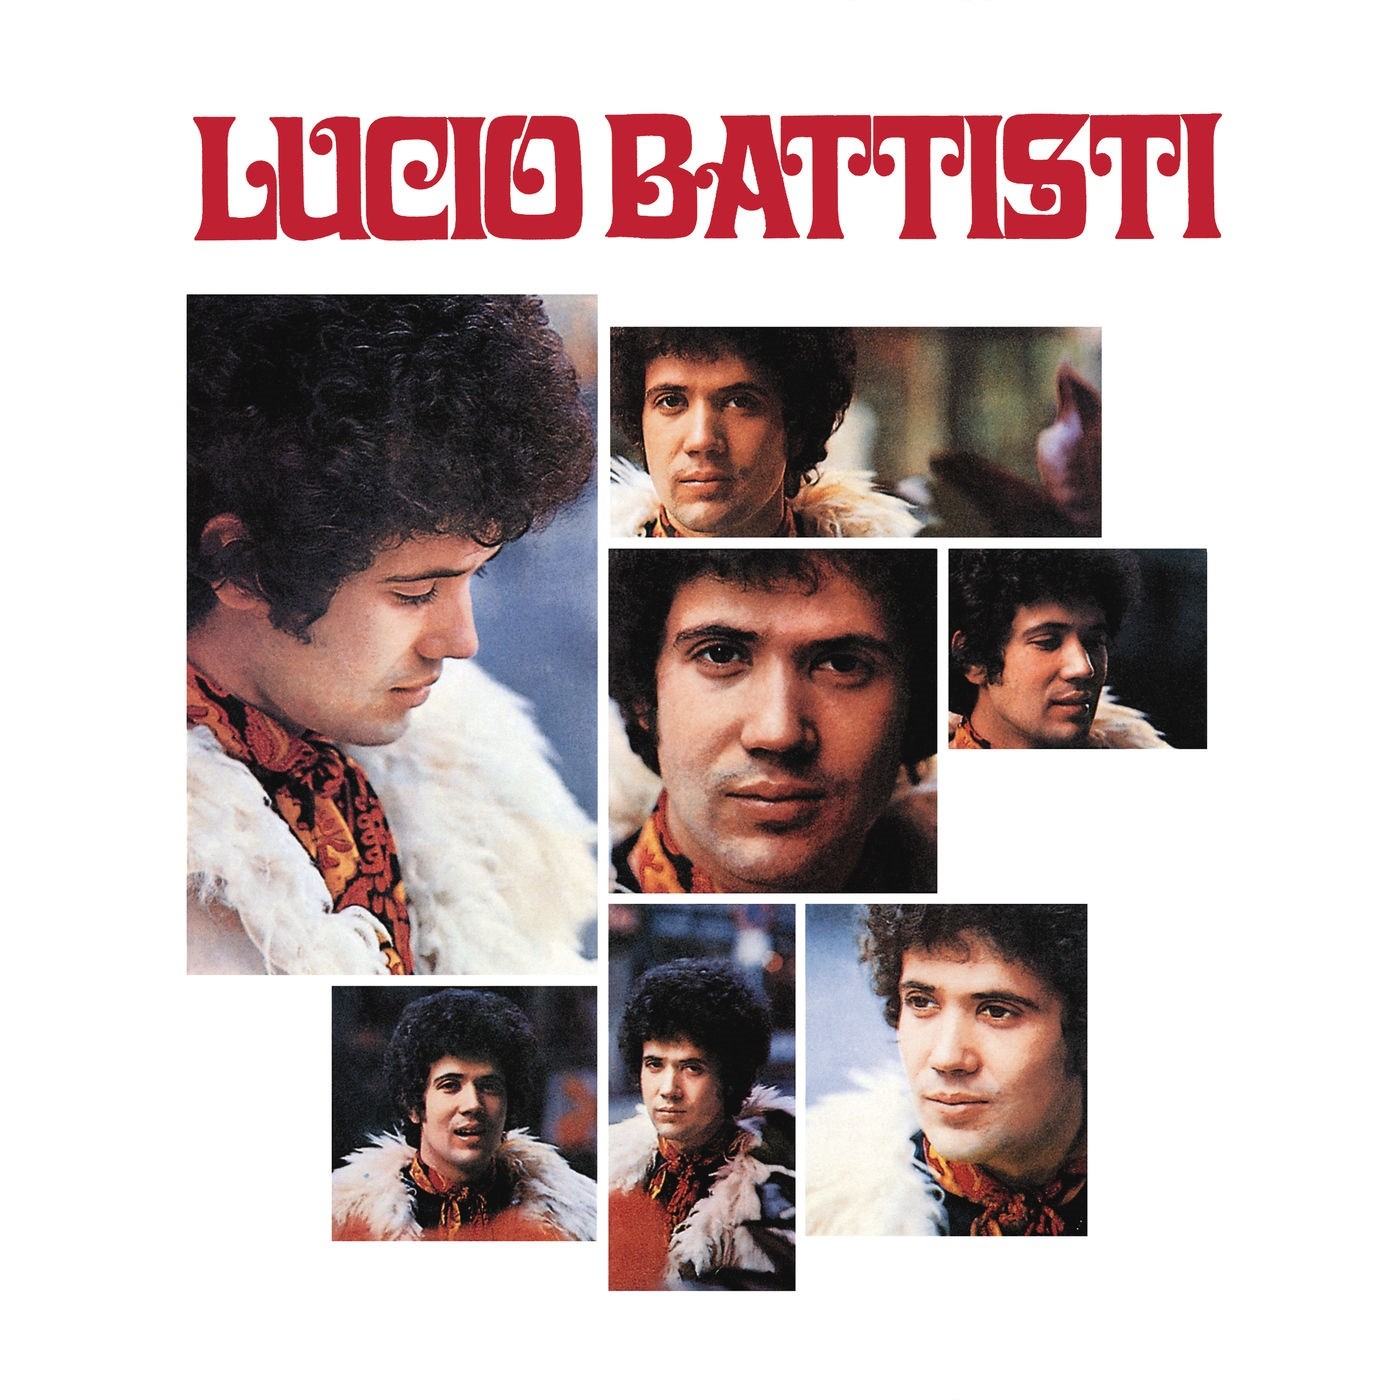 Lucio Battisti – Lucio Battisti (1969/2019) [Official Digital Download 24bit/192kHz]